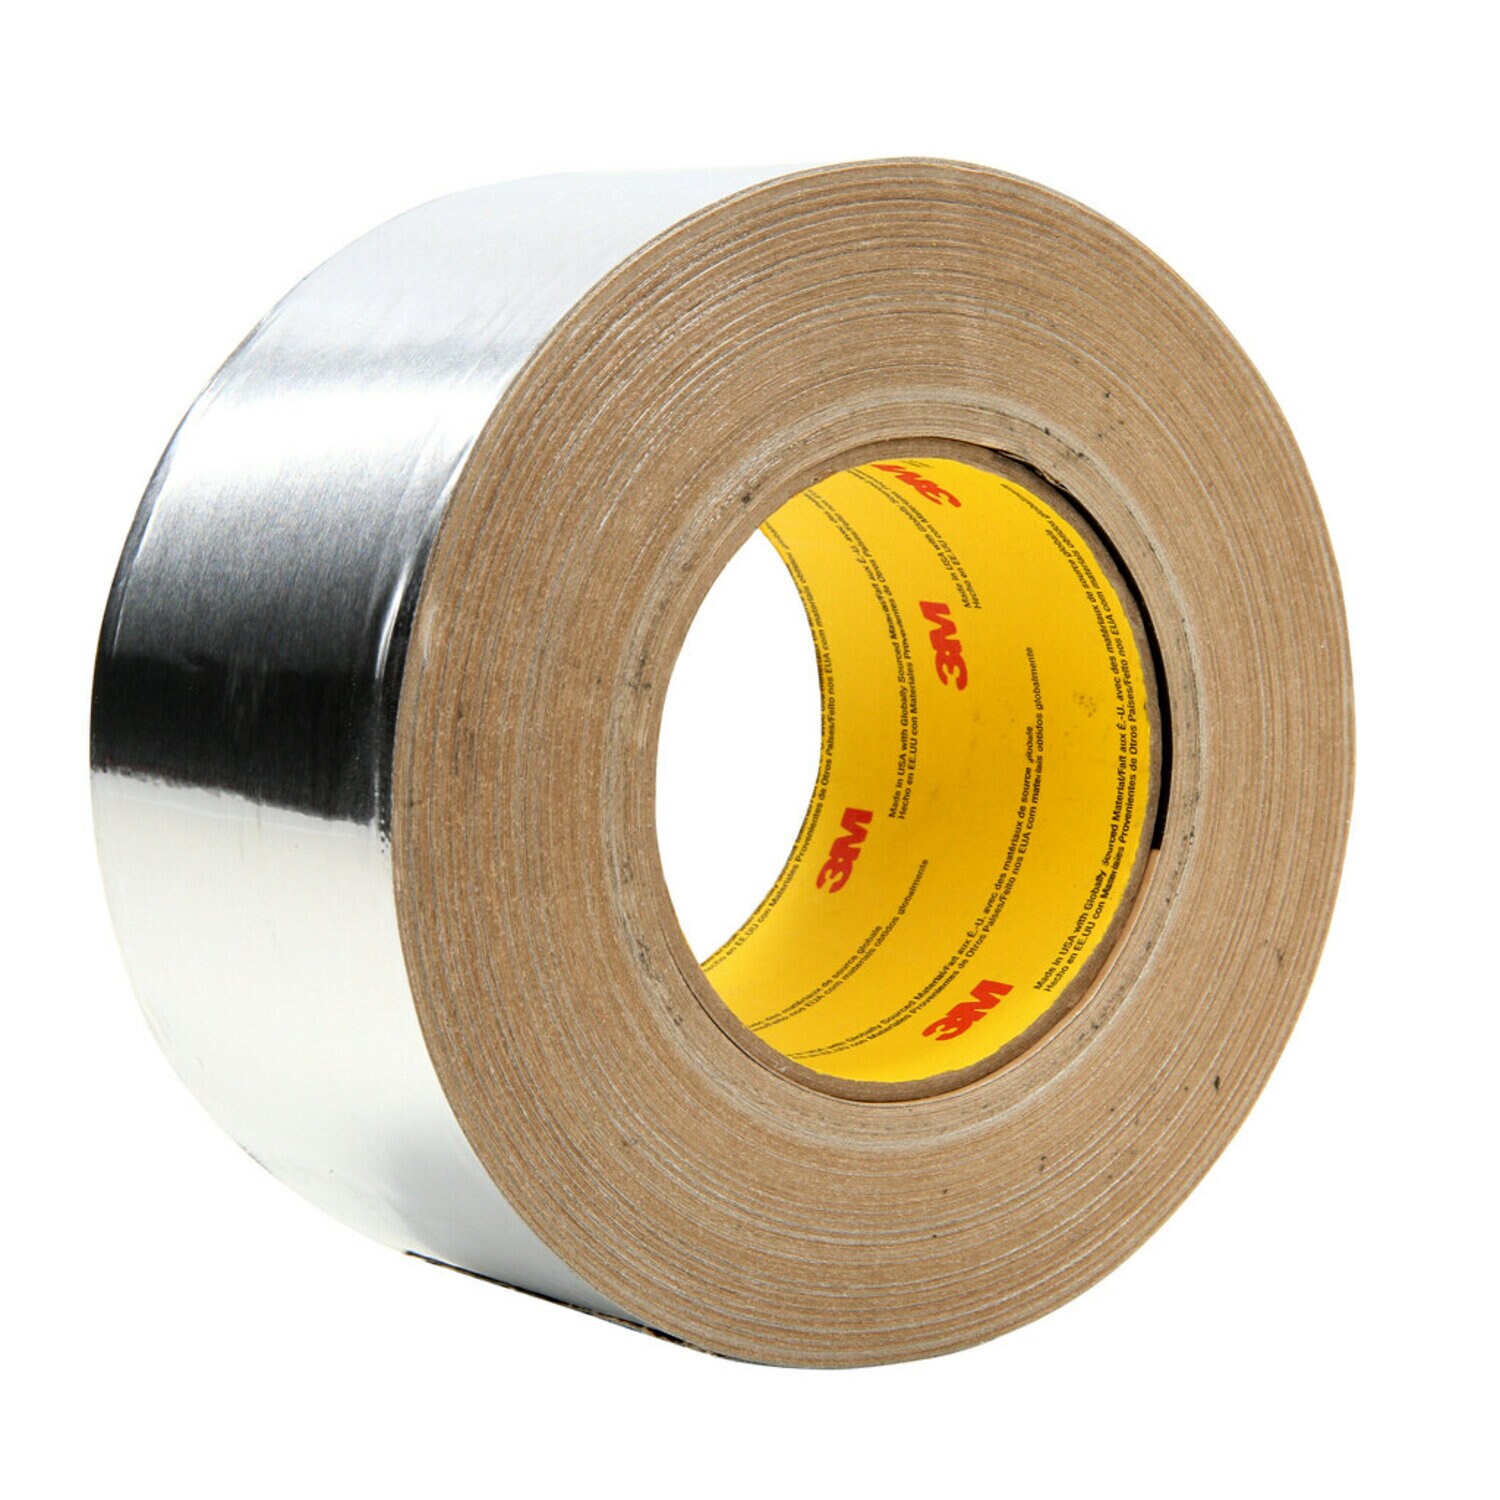 7010314247 - 3M Aluminum Foil Tape 439, Silver, 6 in x 60 yd, 3.1 mil, 4 rolls per
case